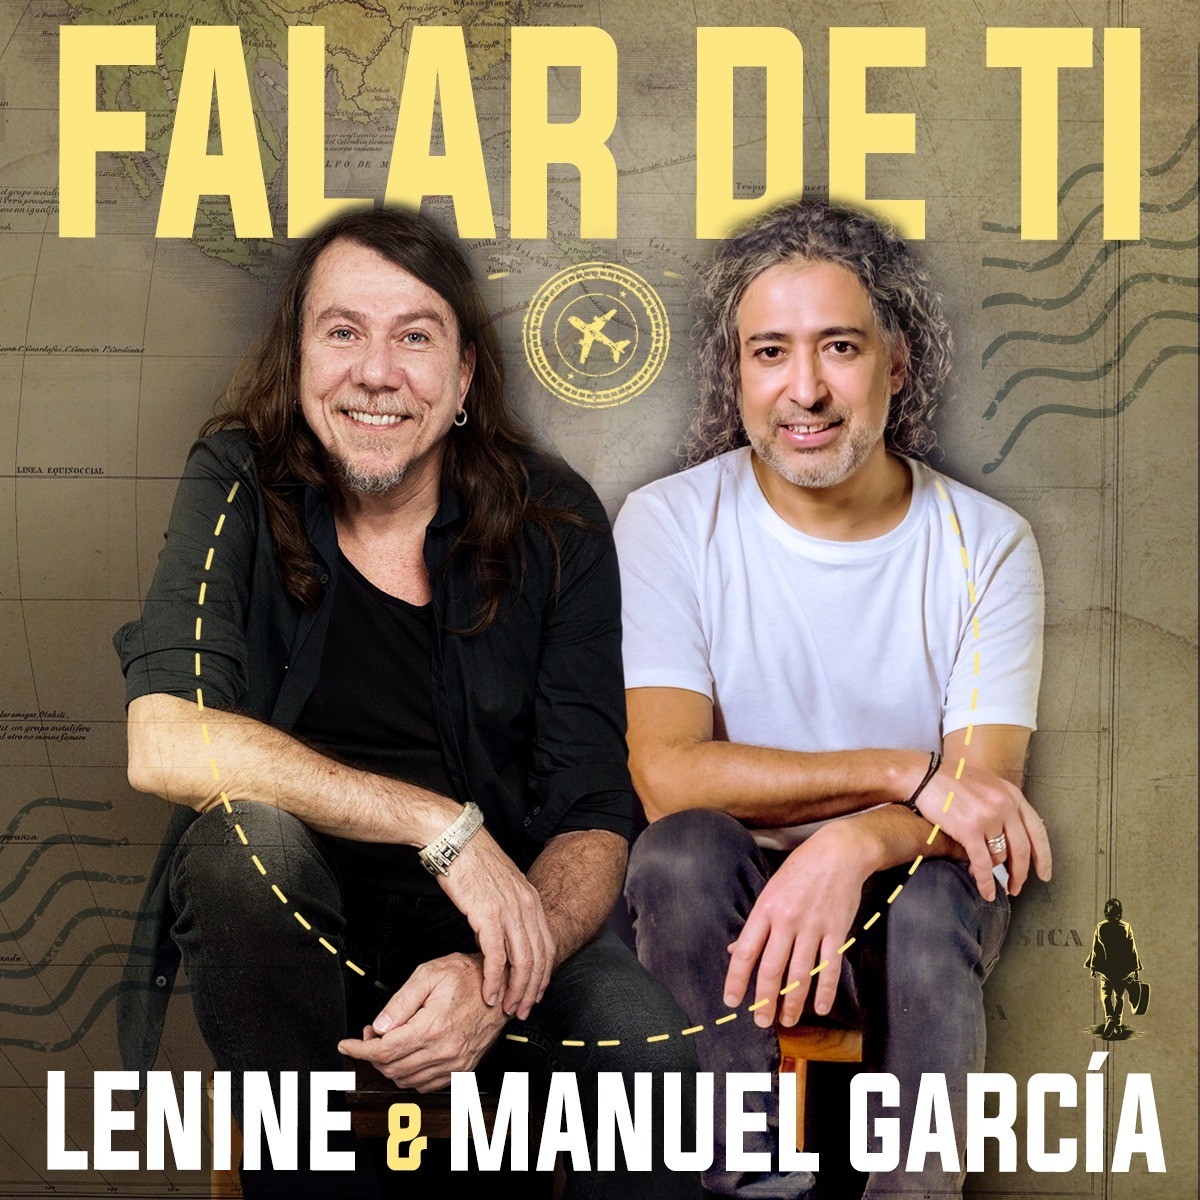 Lenine sigue la estela chilena de Manuel García en el sencillo 'Falar de ti' | blog de mauro ferreira